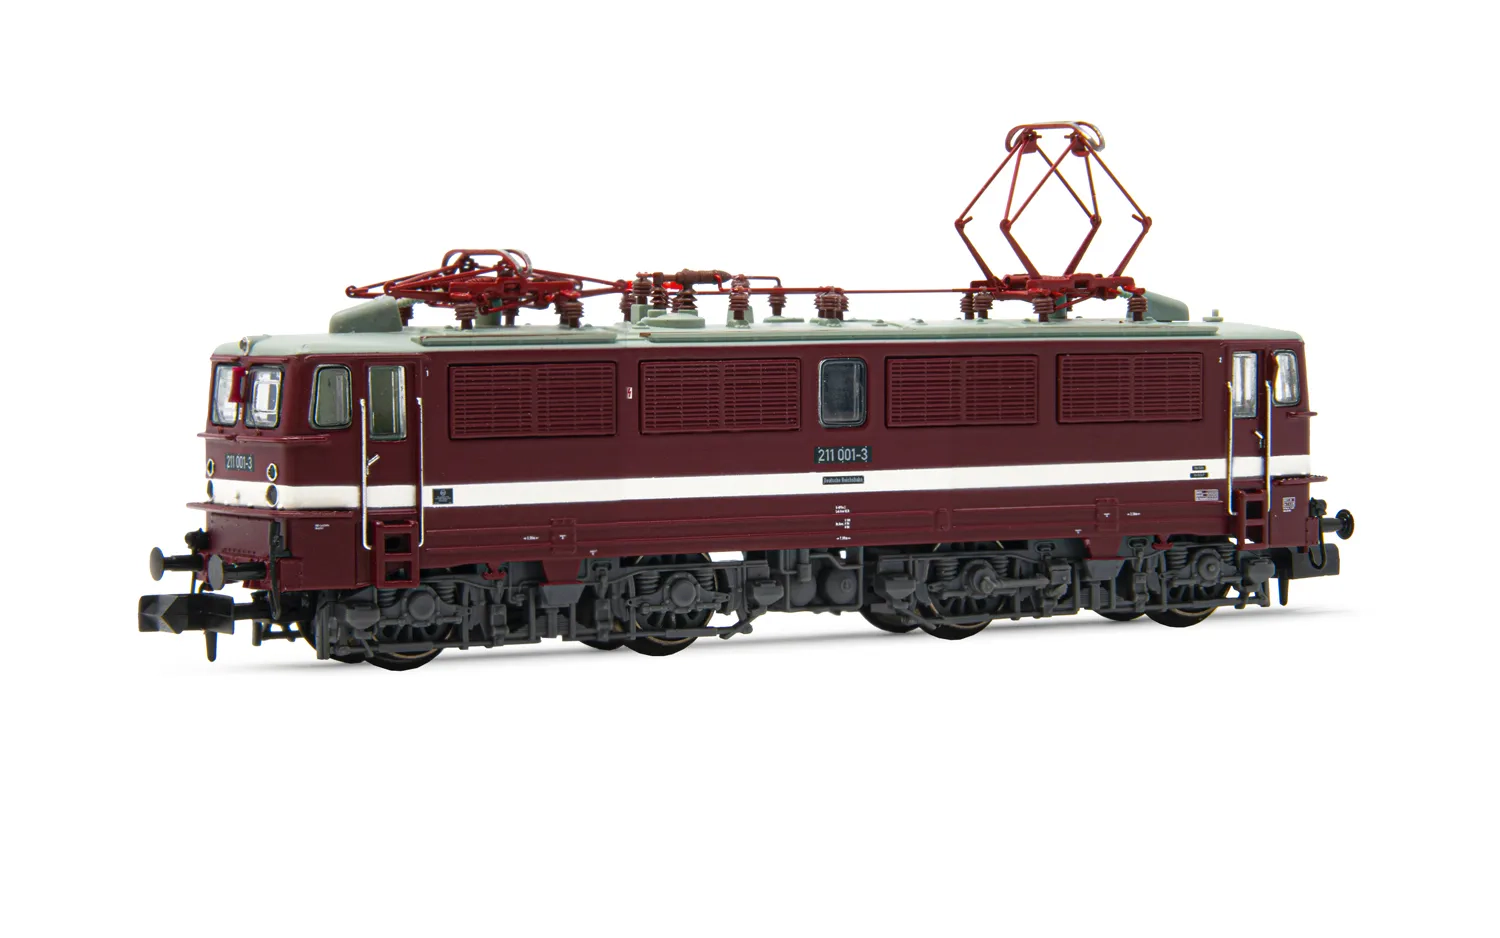 DR, locomotora eléctrica clase 211, decoración roja con linea blanca gruesa, ép. IV